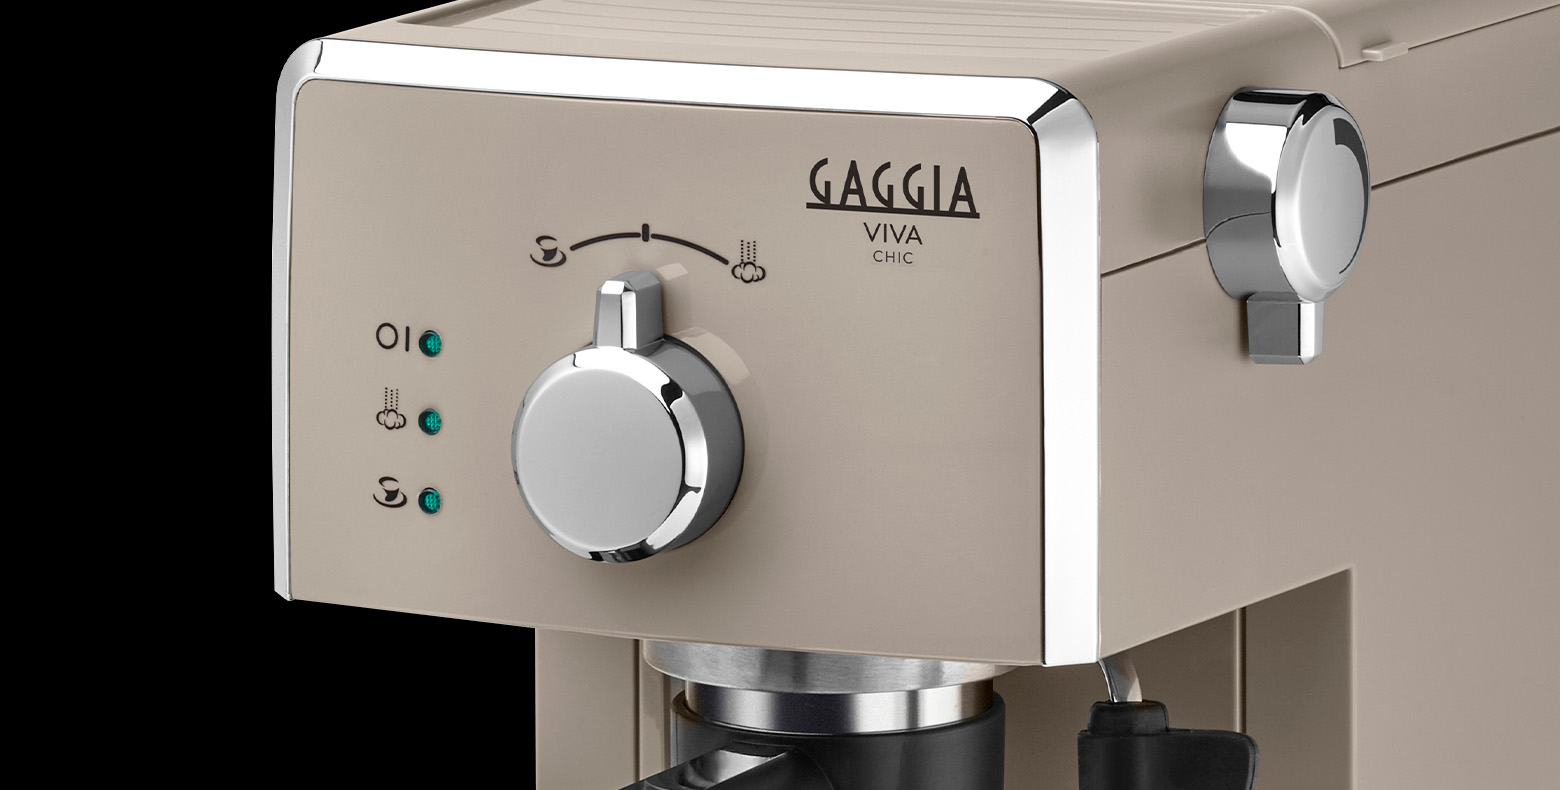 Cafetera espresso manual italiana clásica Gaggia, color gris oscuro, 110 V